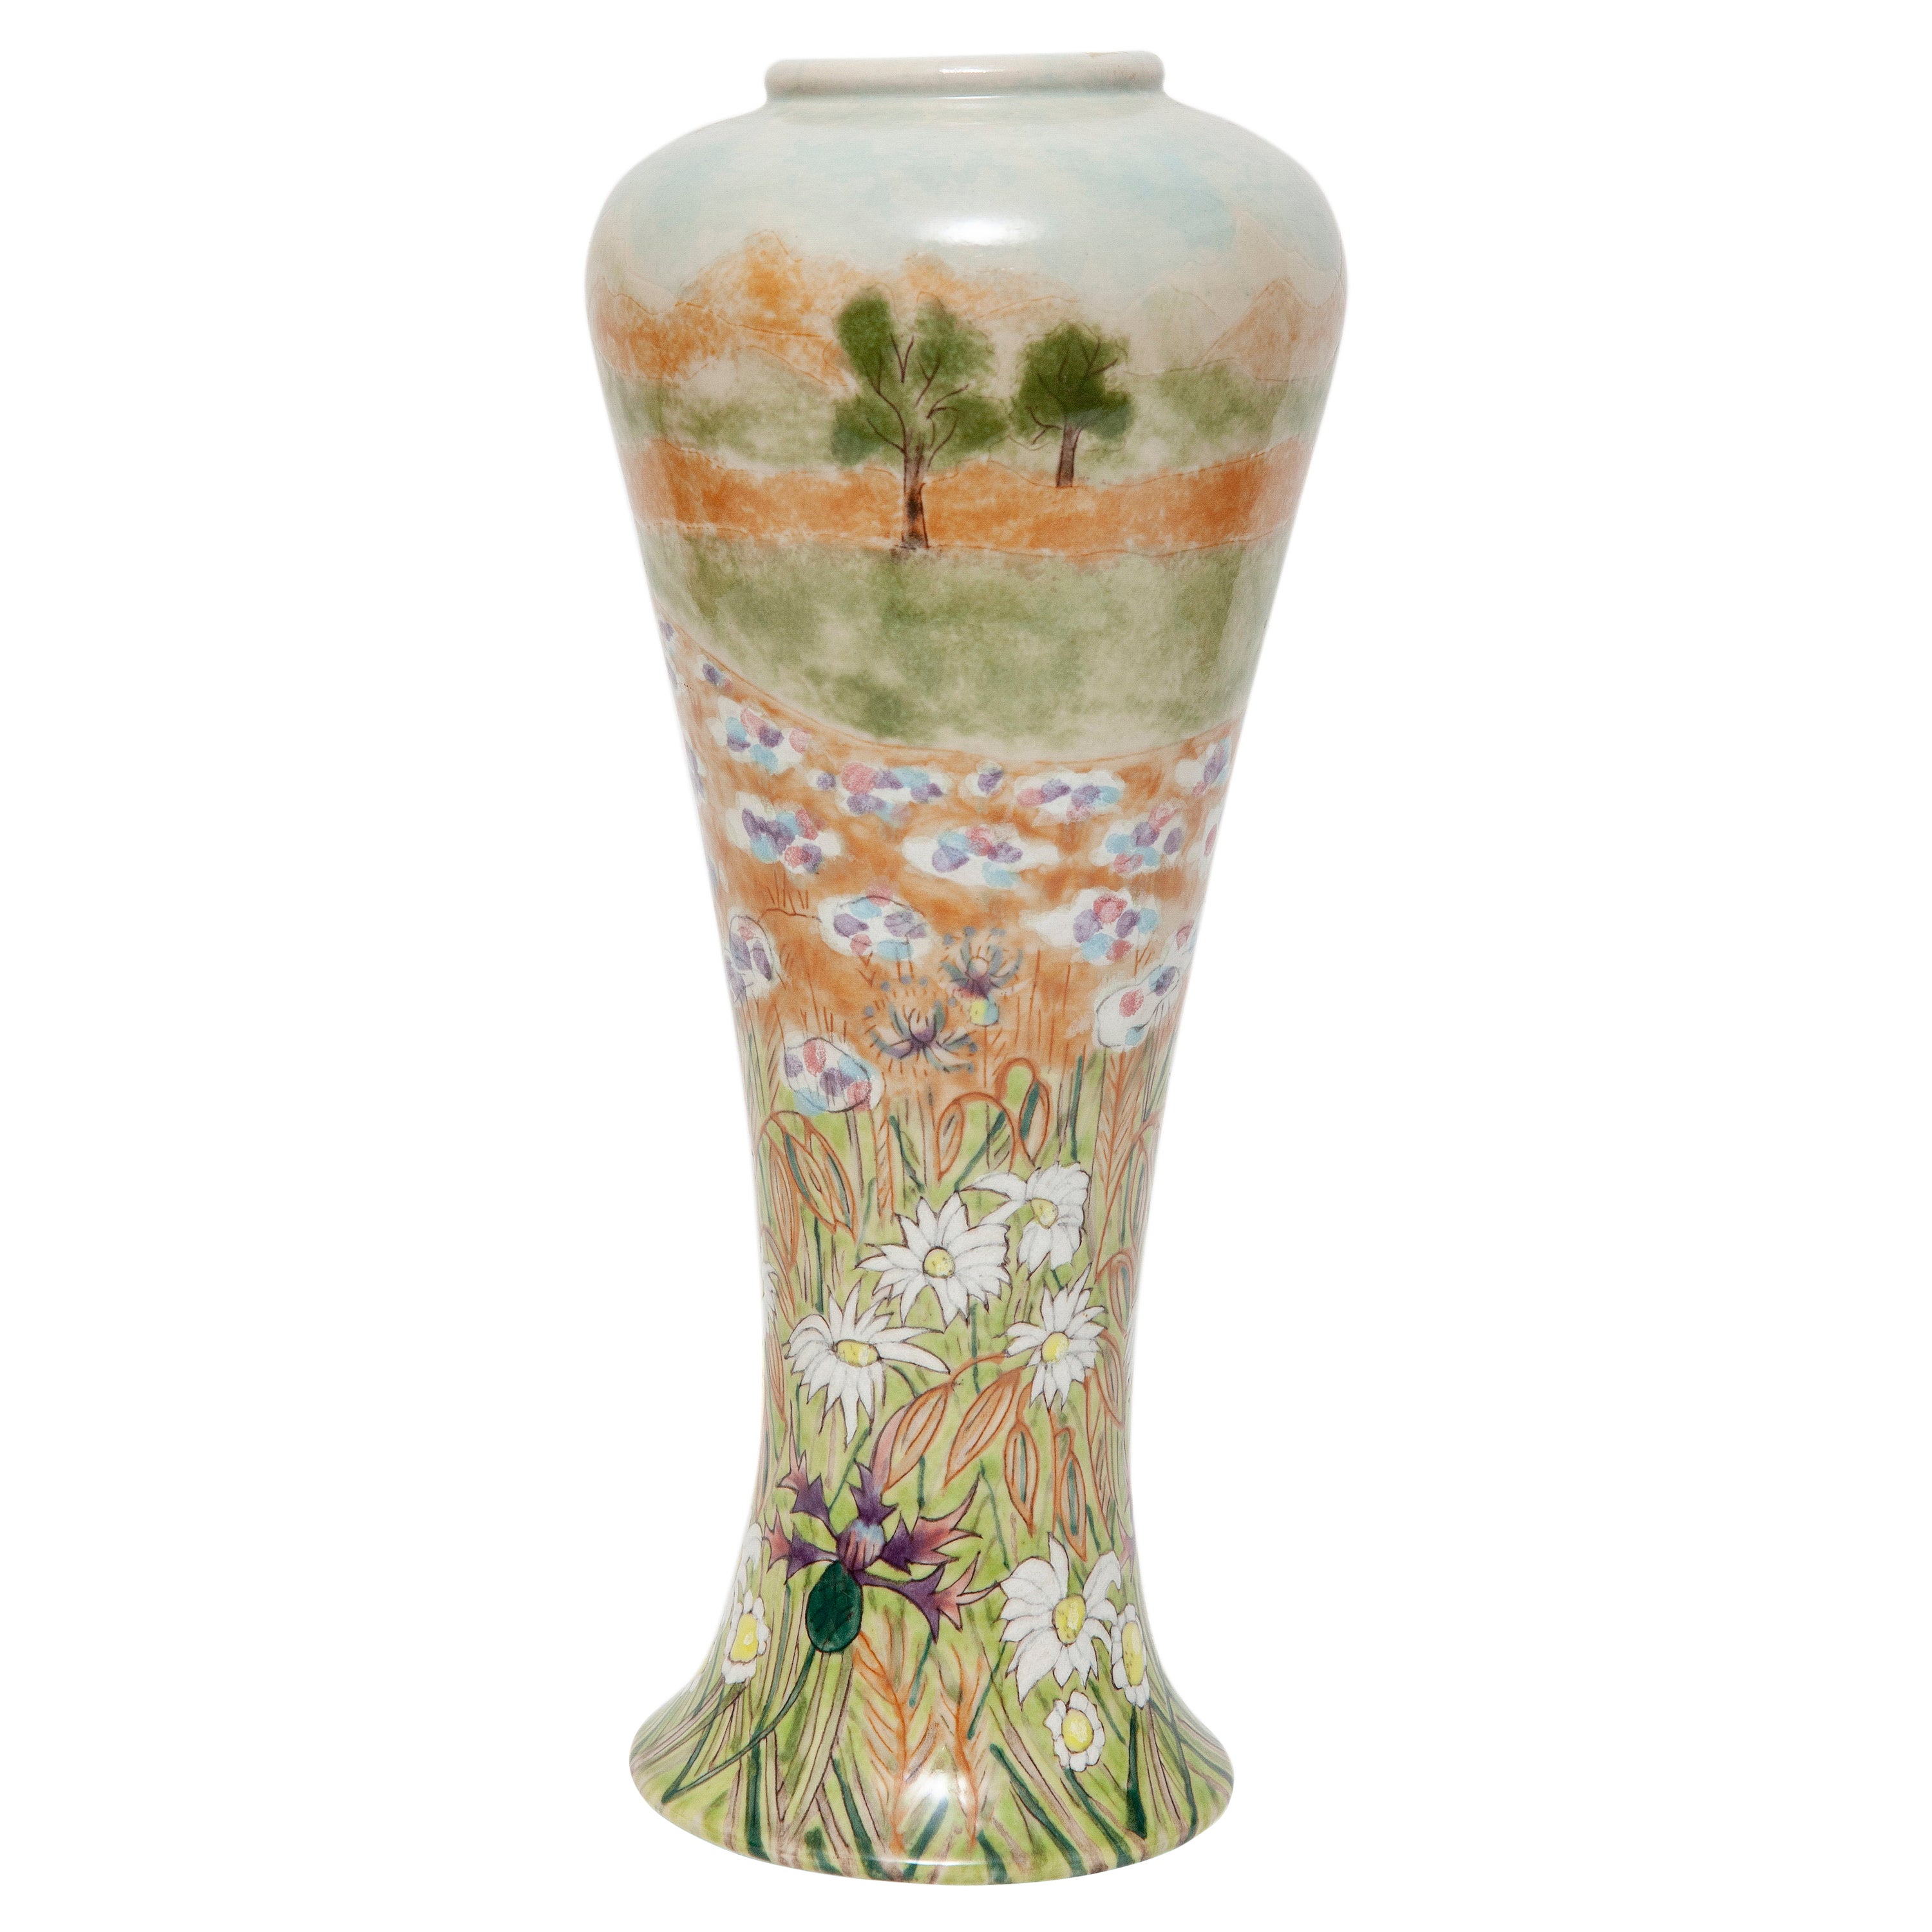 Vase « Cobridge summer meadow » édition limitée 28/250 daisy's 10"" de haut